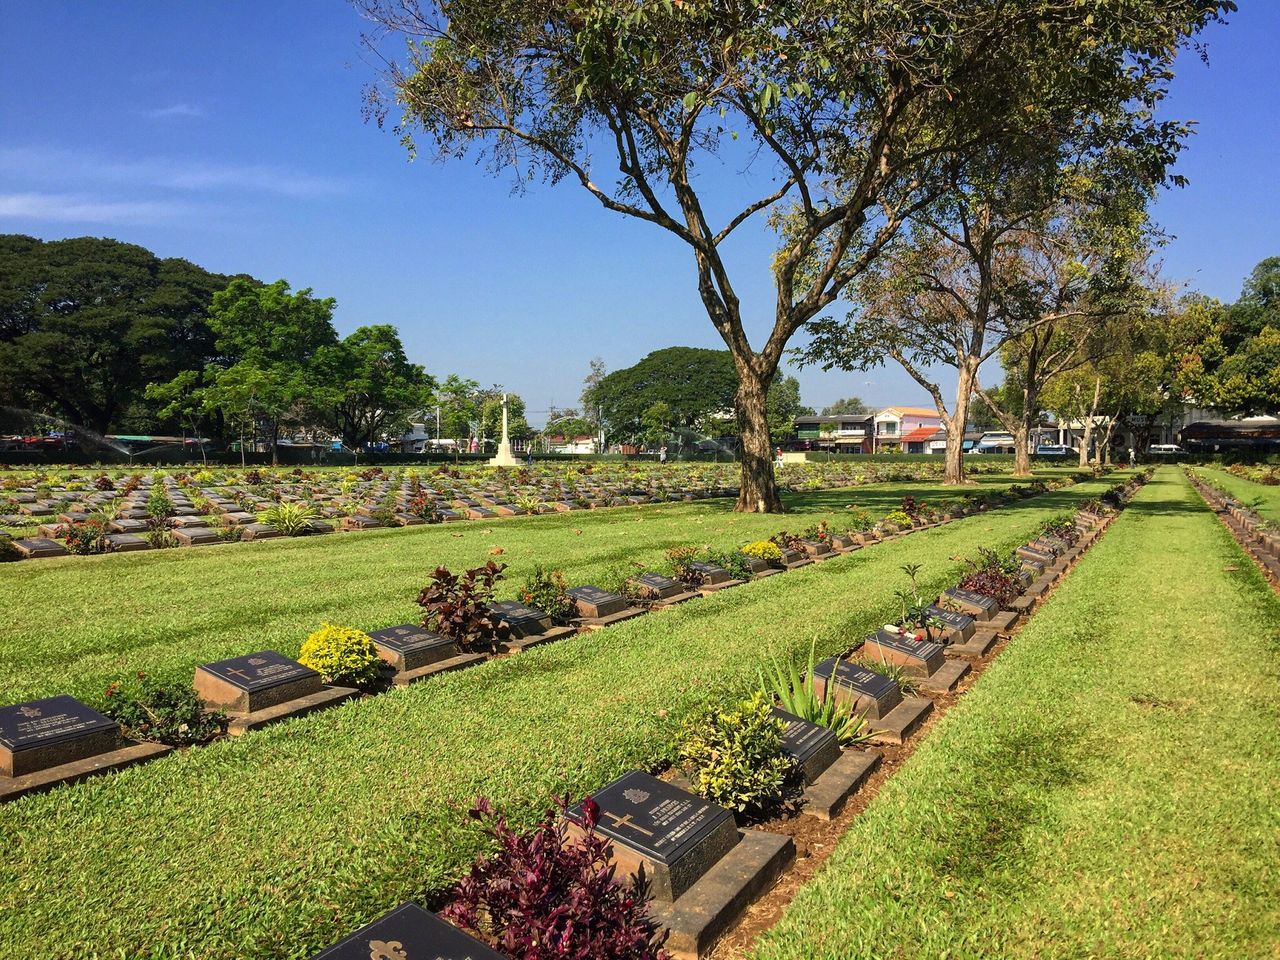 Visit the Kanchanaburi War Cemetery